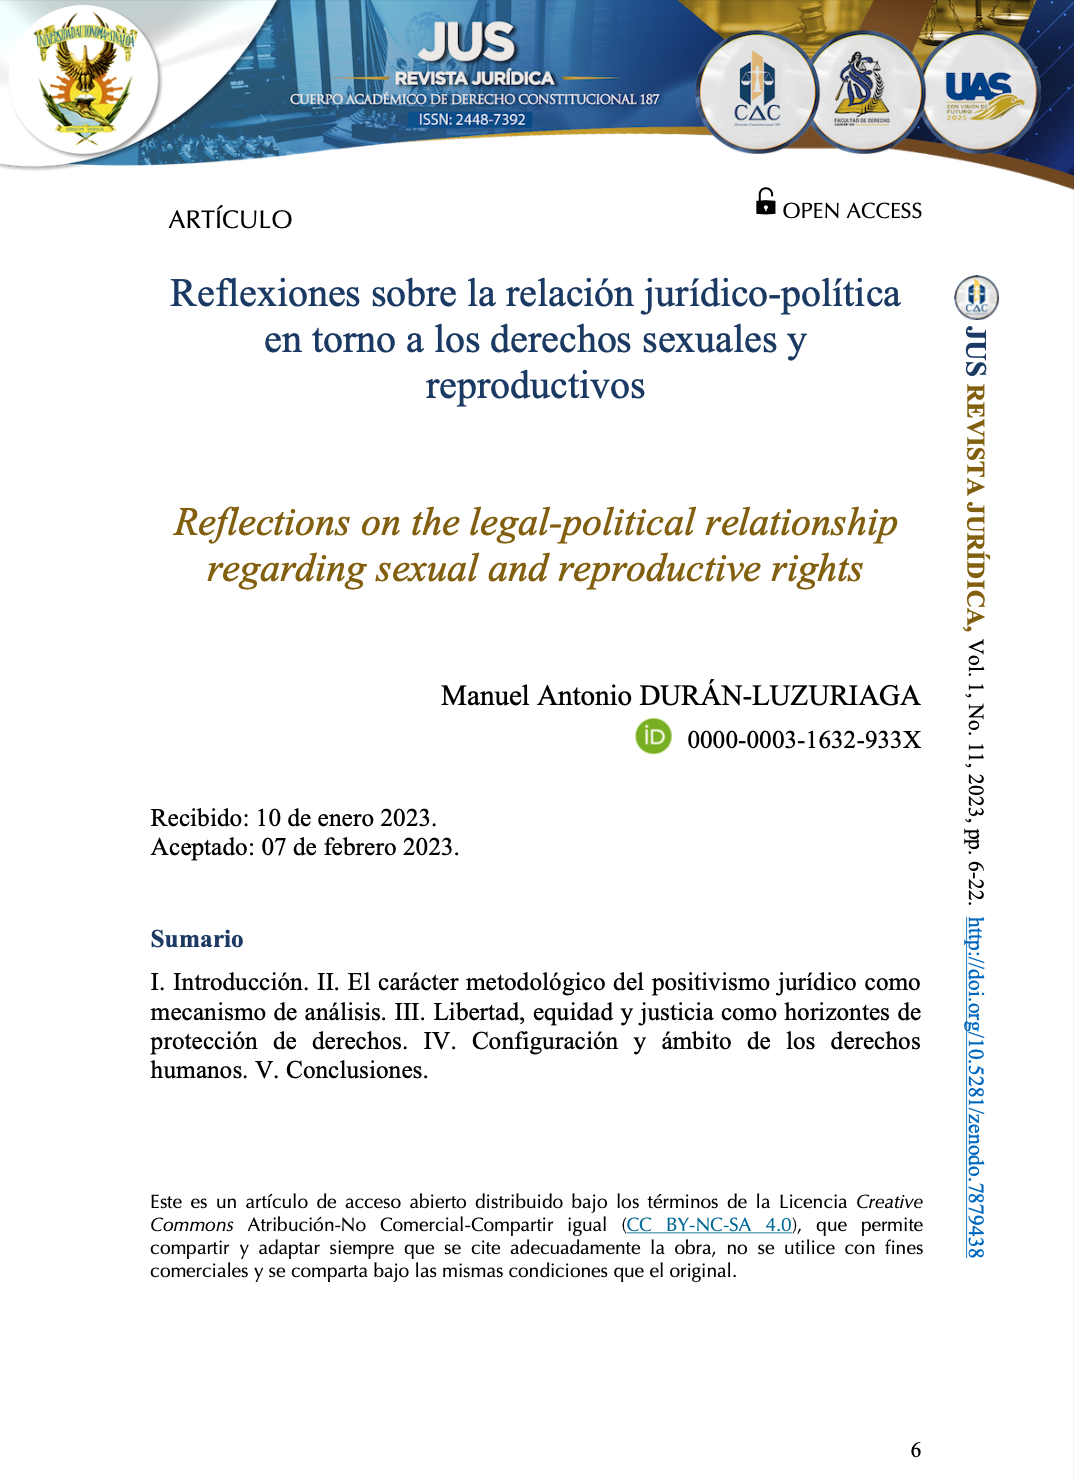 Reflexiones sobre la relación jurídico-política en torno a los derechos sexuales y reproductivos